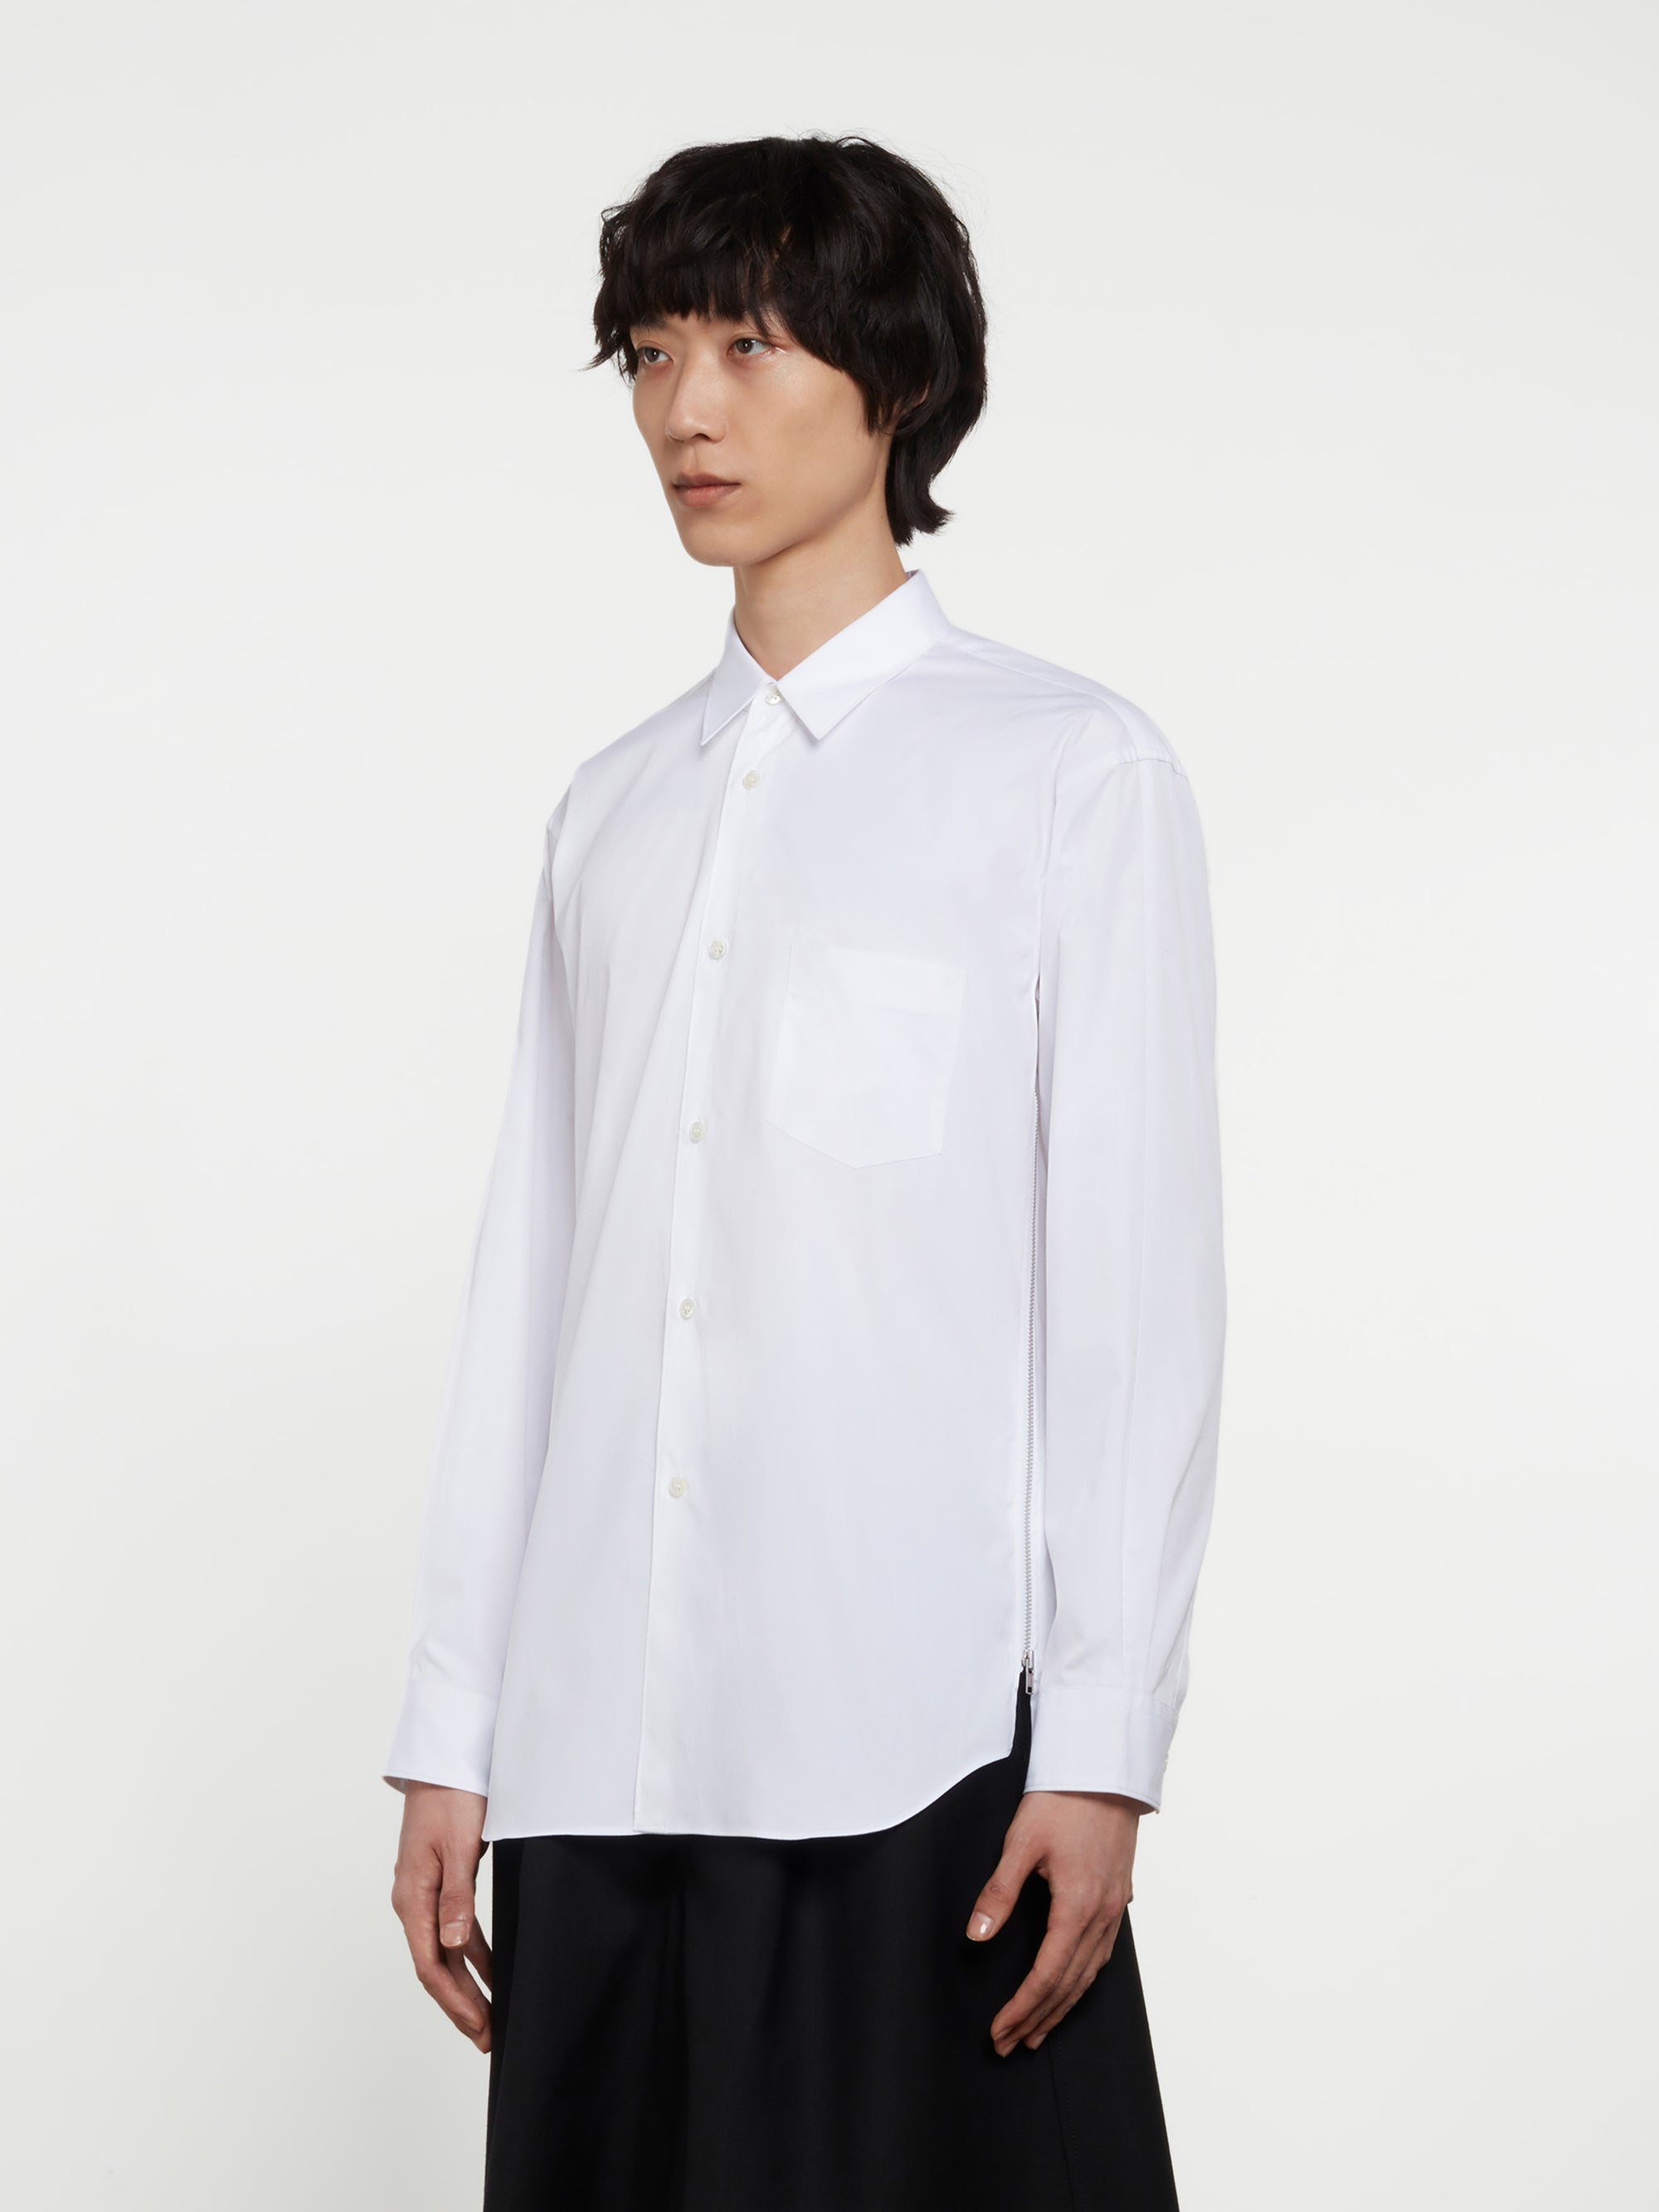 CDG Shirt - Men's Zipped Cotton Shirt - (White) view 2